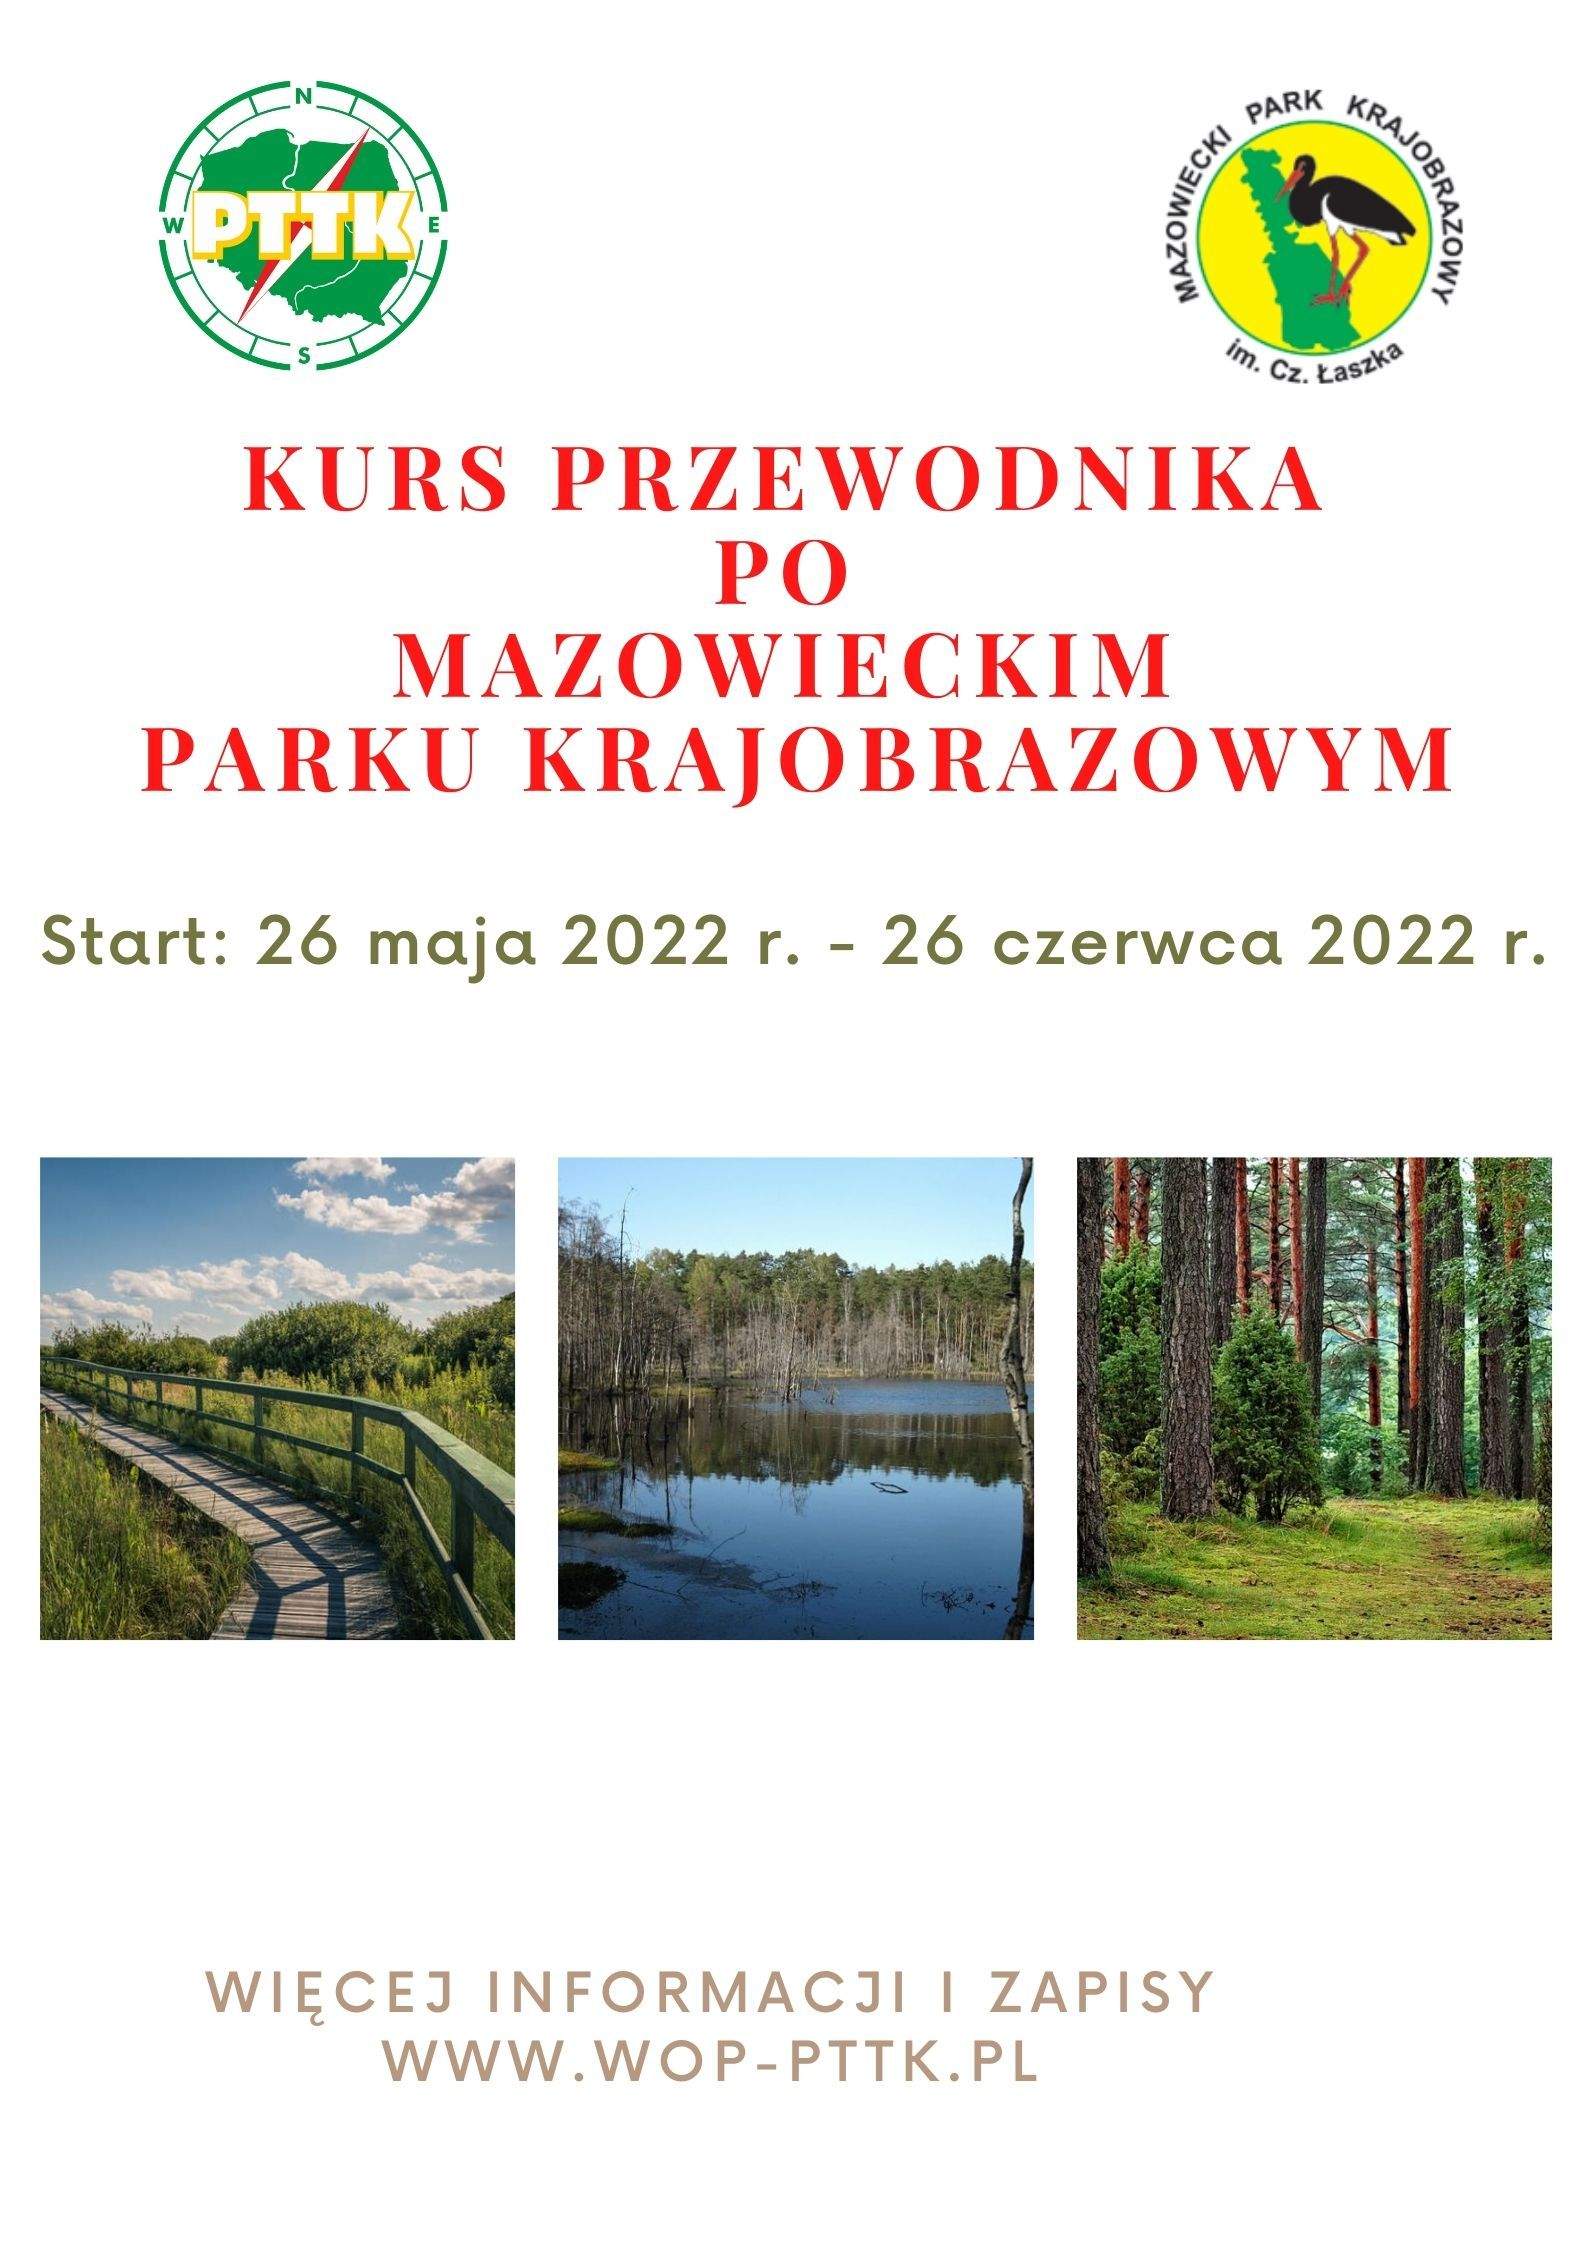 Kurs przewodnika po Mazowieckim Parku Krajobrazowym - start: 26.05.2022 r.